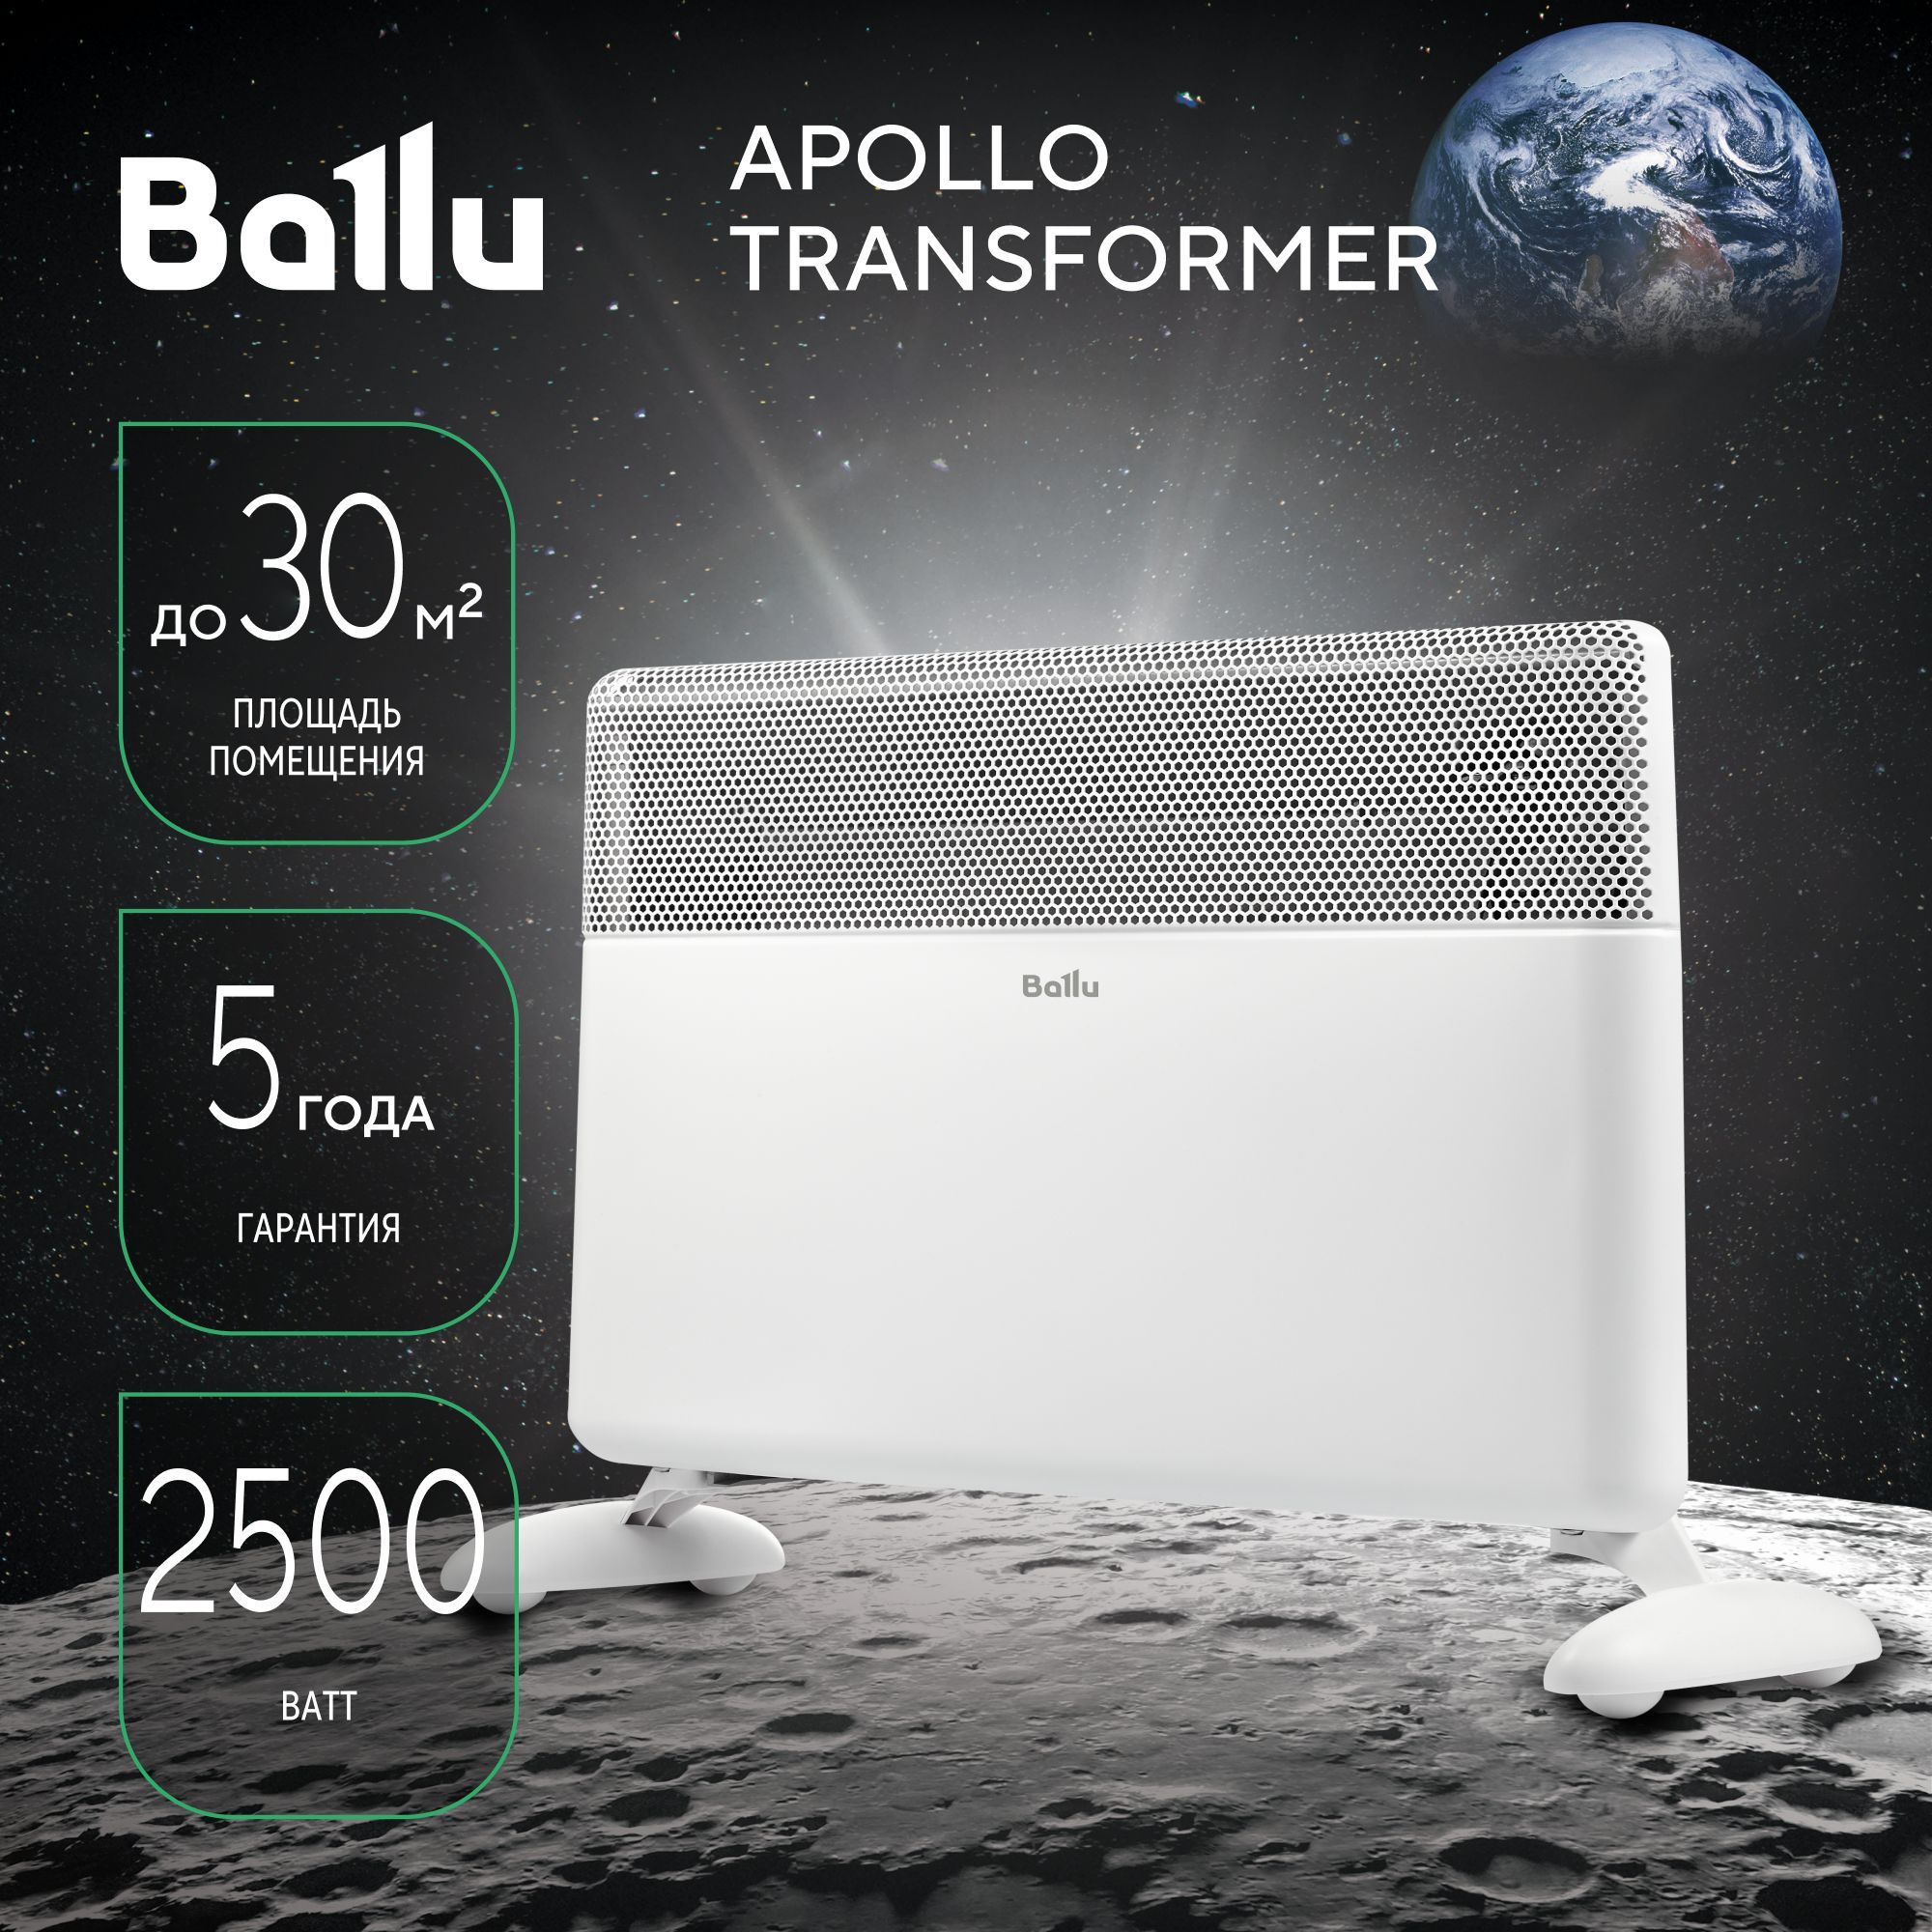 Ballu Apollo Transformer. Ballu Apollo. Модуль отопительный электрического конвектора Balu Apollo Transformer BEC/at-1500. Ballu BEC-at-1500 задипает сенсор.